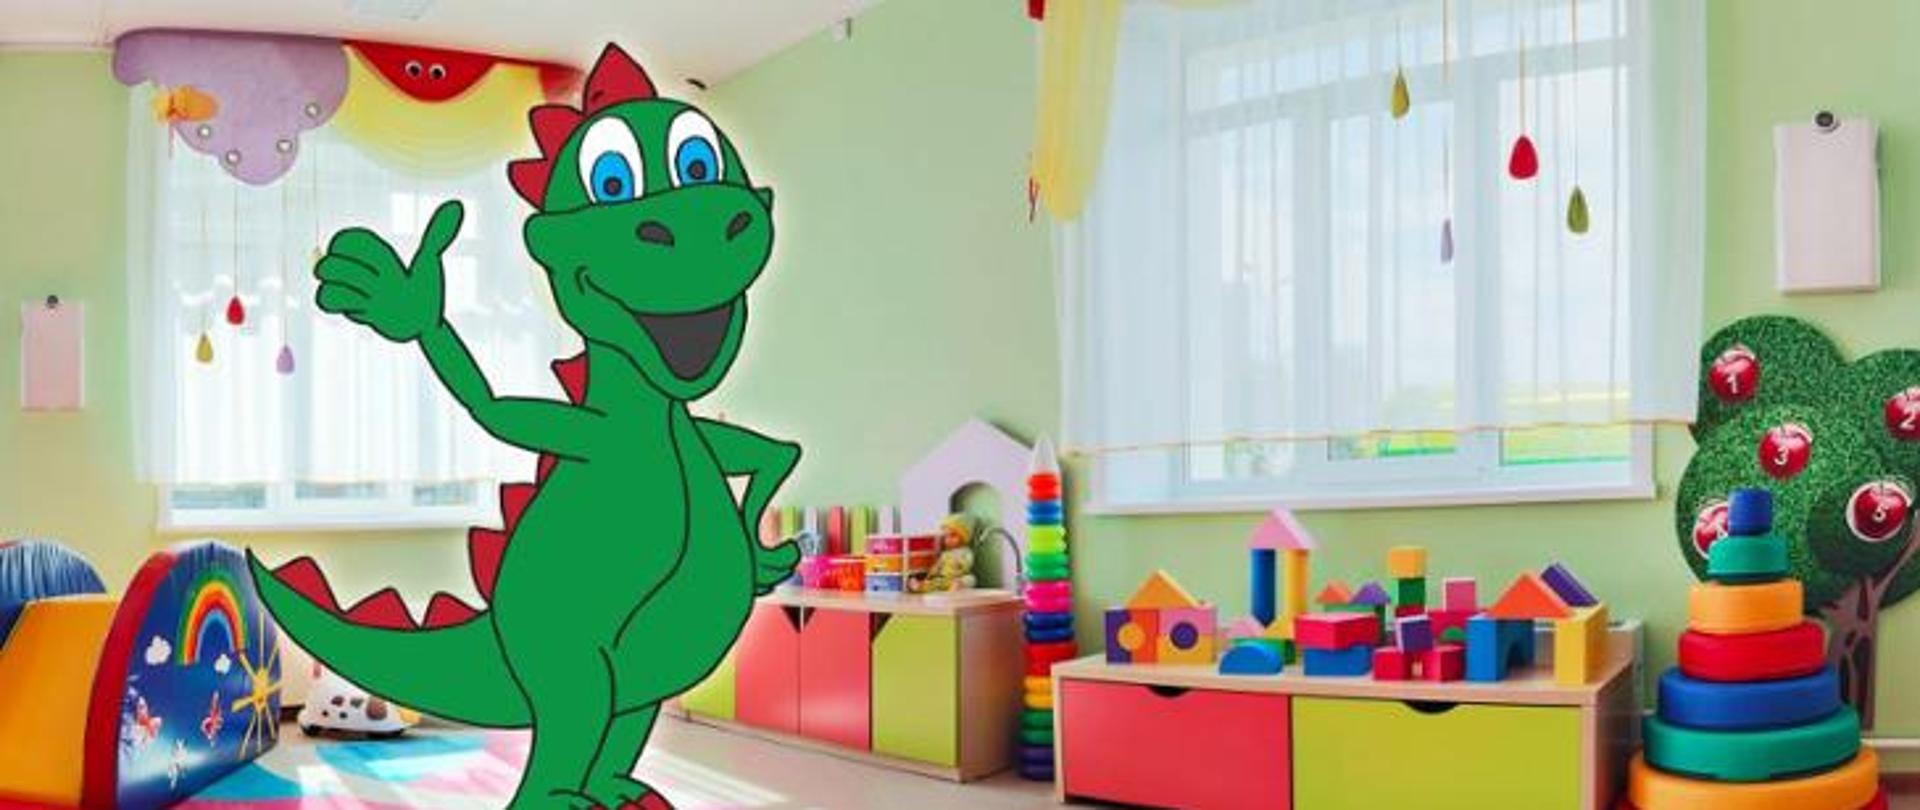 Rysunkowy uśmiechnięty krokodyl w kolorowej sali przedszkolnej wyposażonej w zabawki i przybory edukacyjne